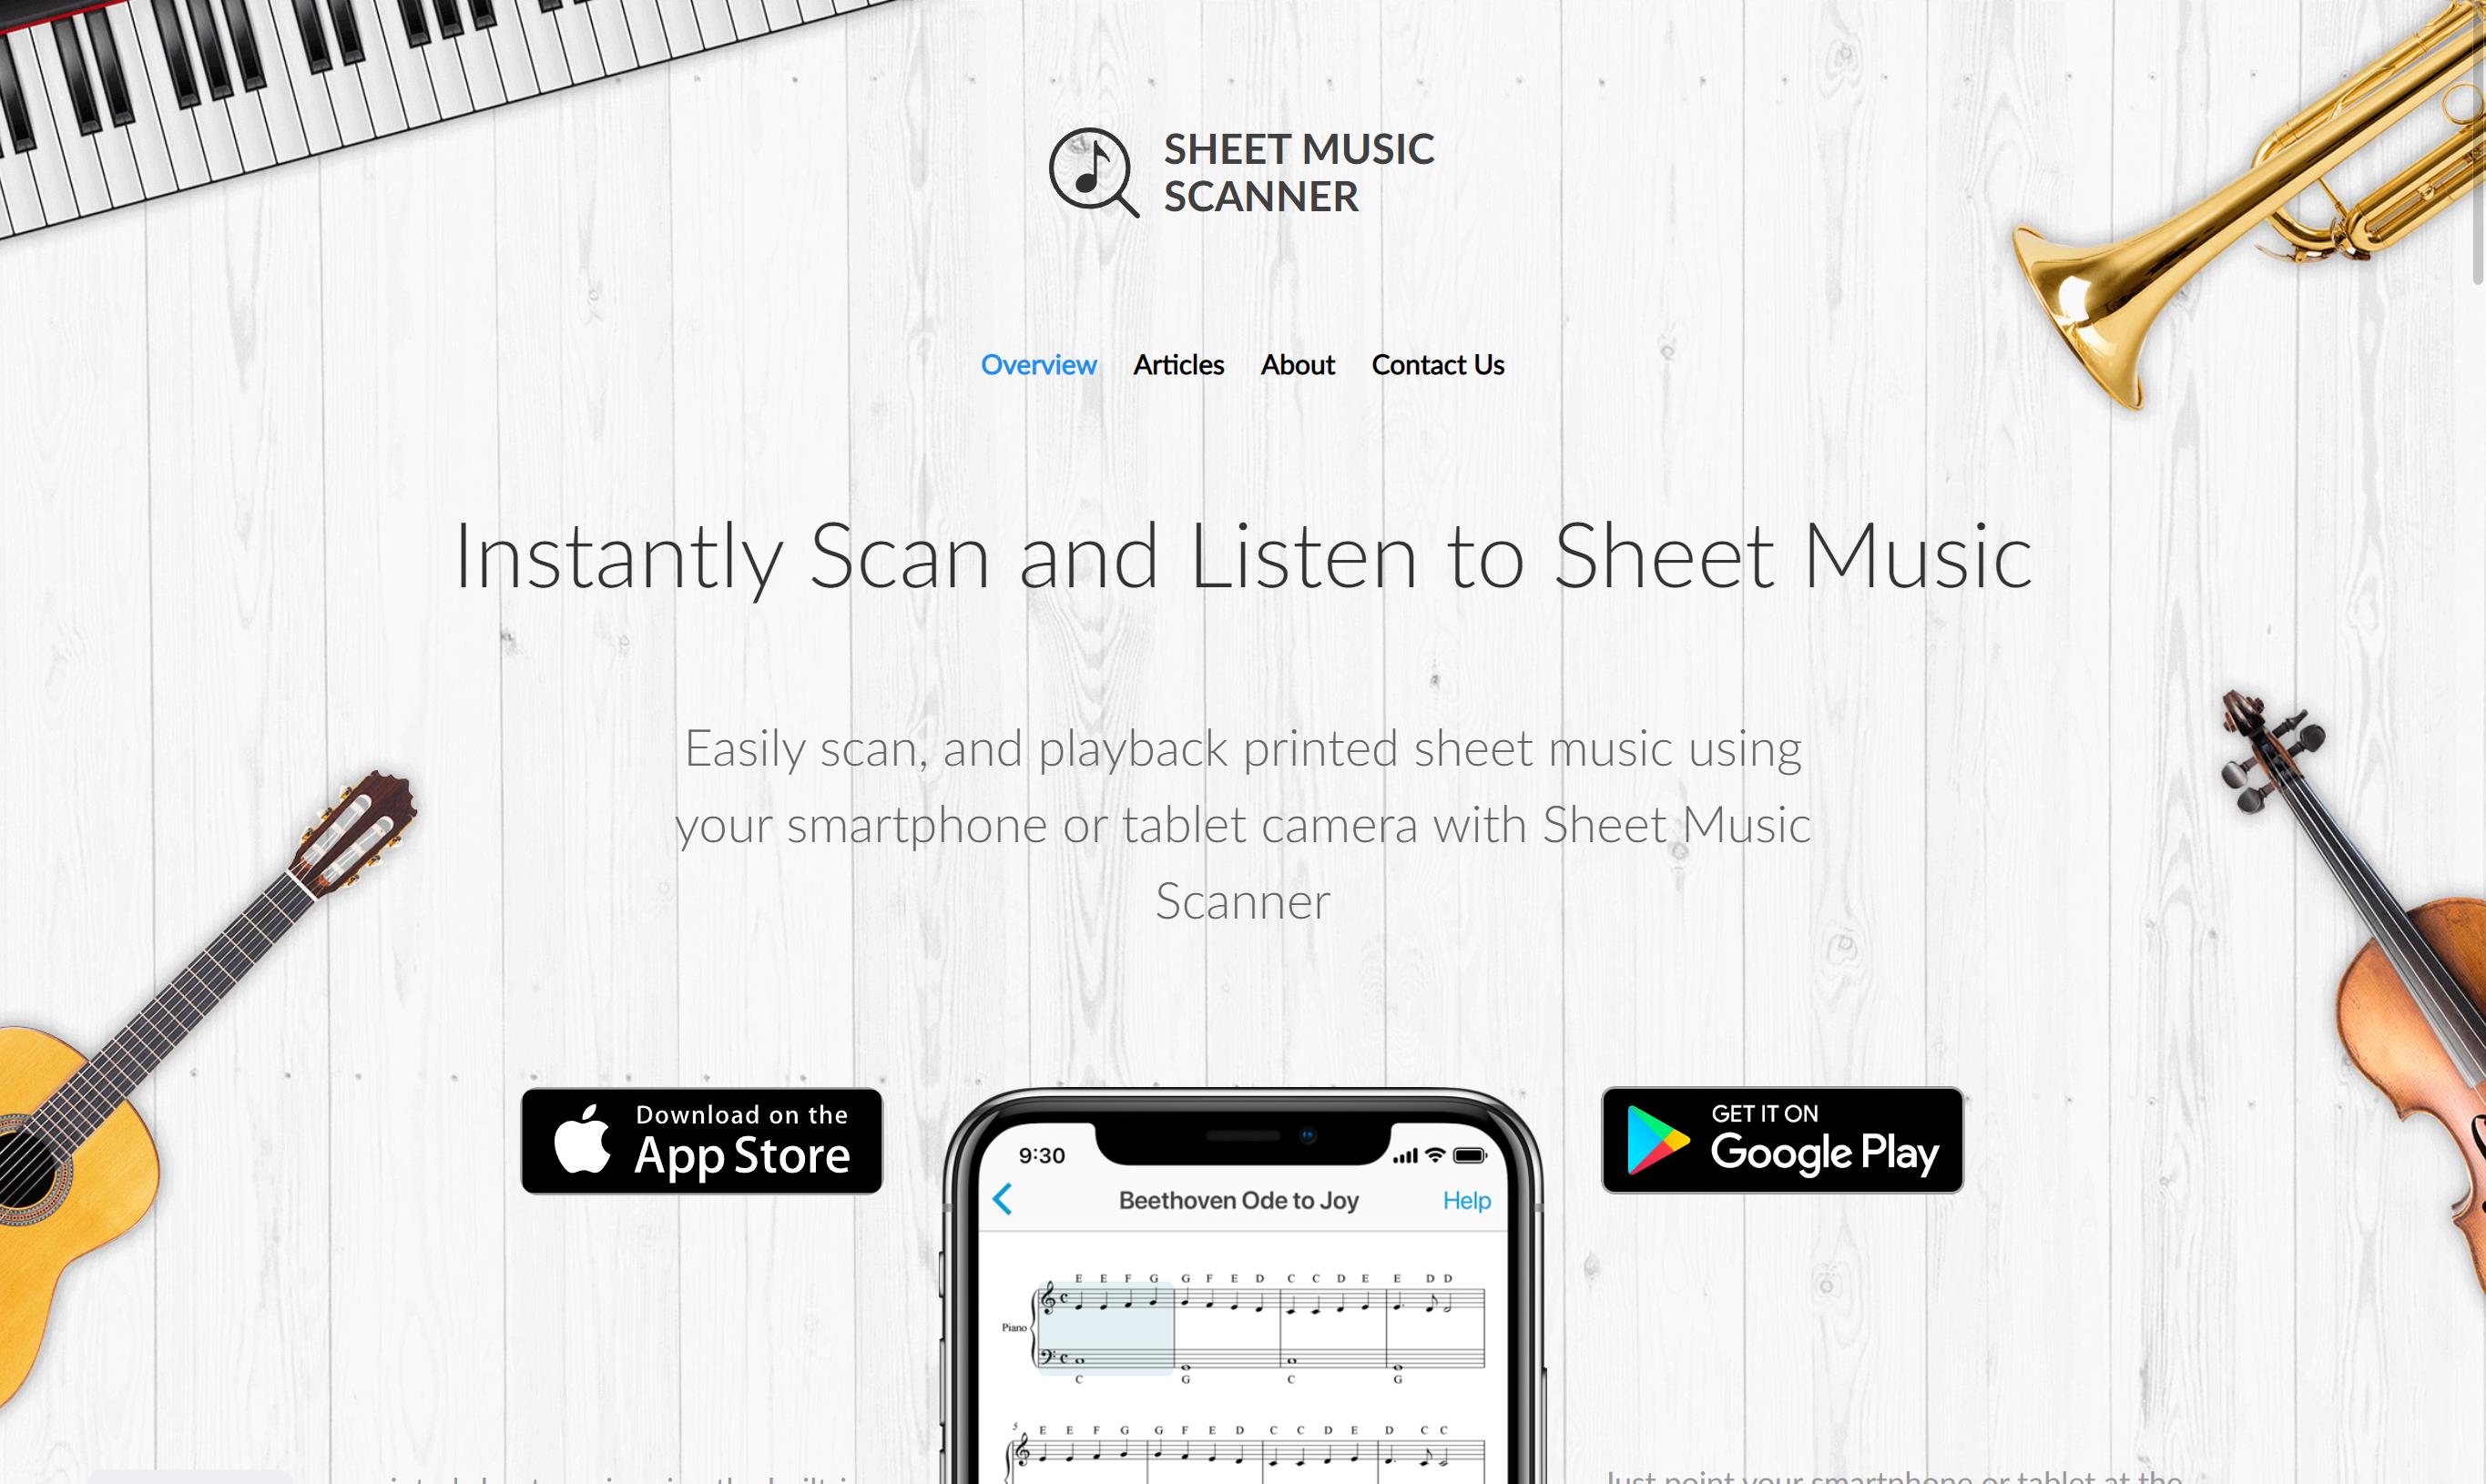 악보 스캐너 - Sheet Music Scanner 공식 홈페이지